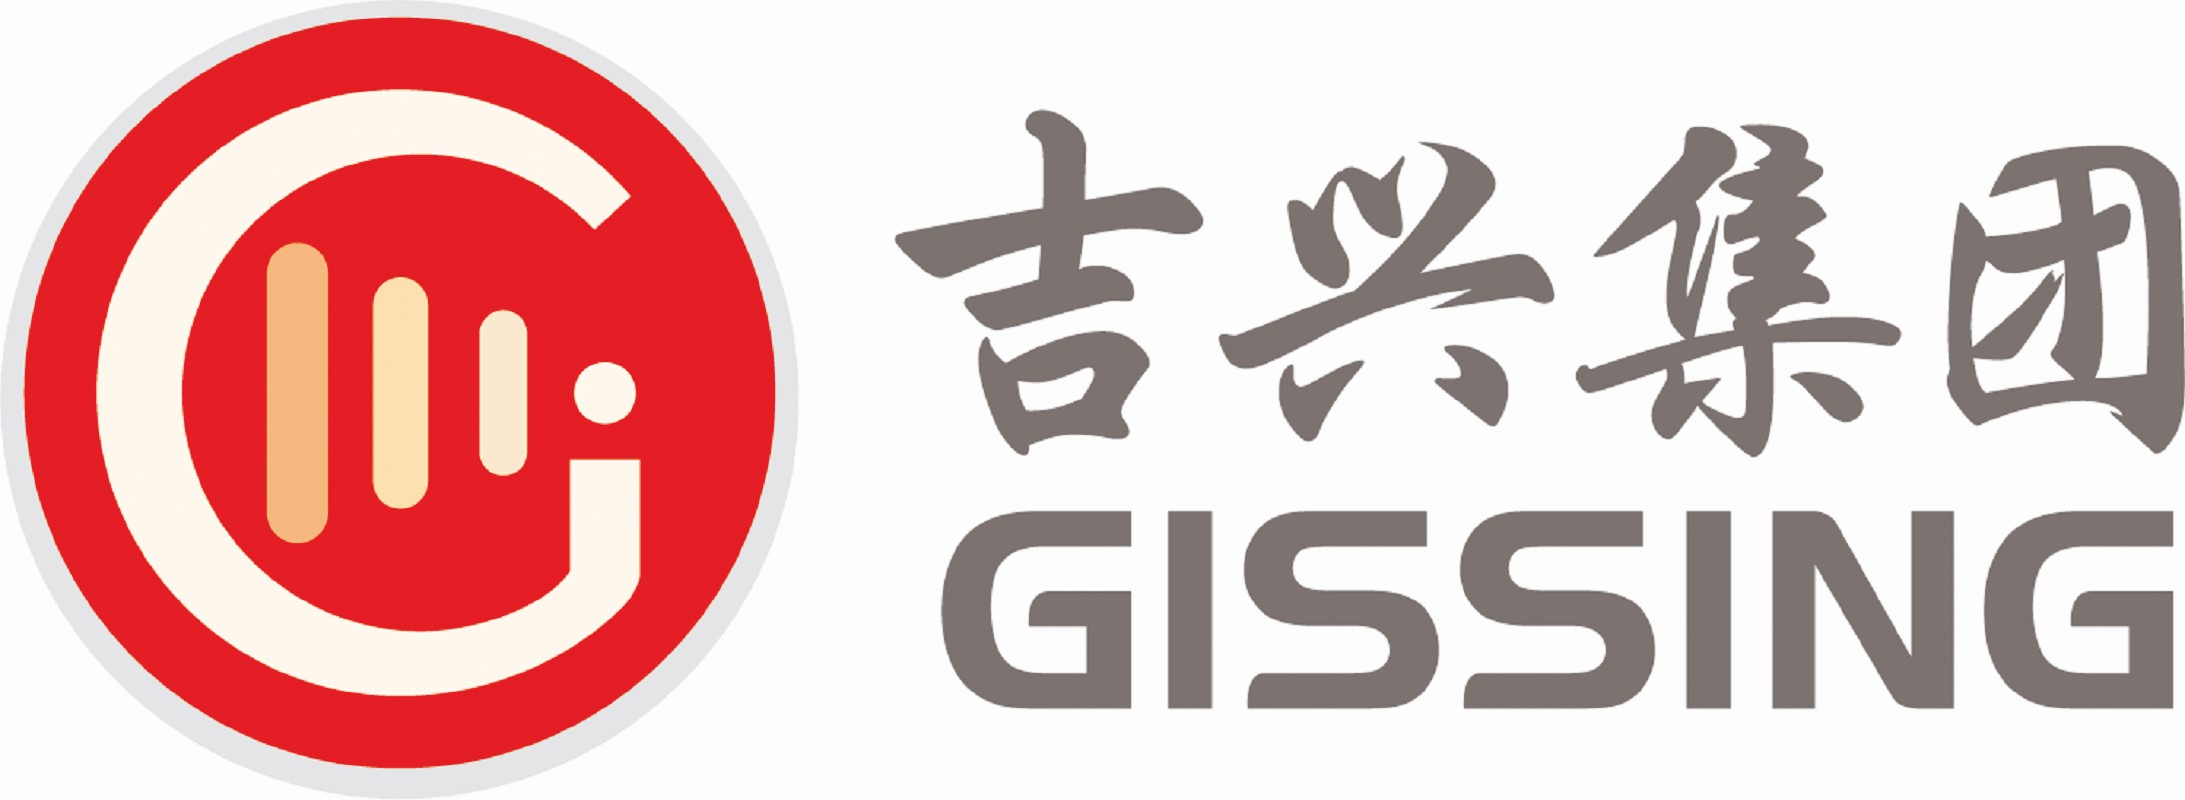 Gissing Logo